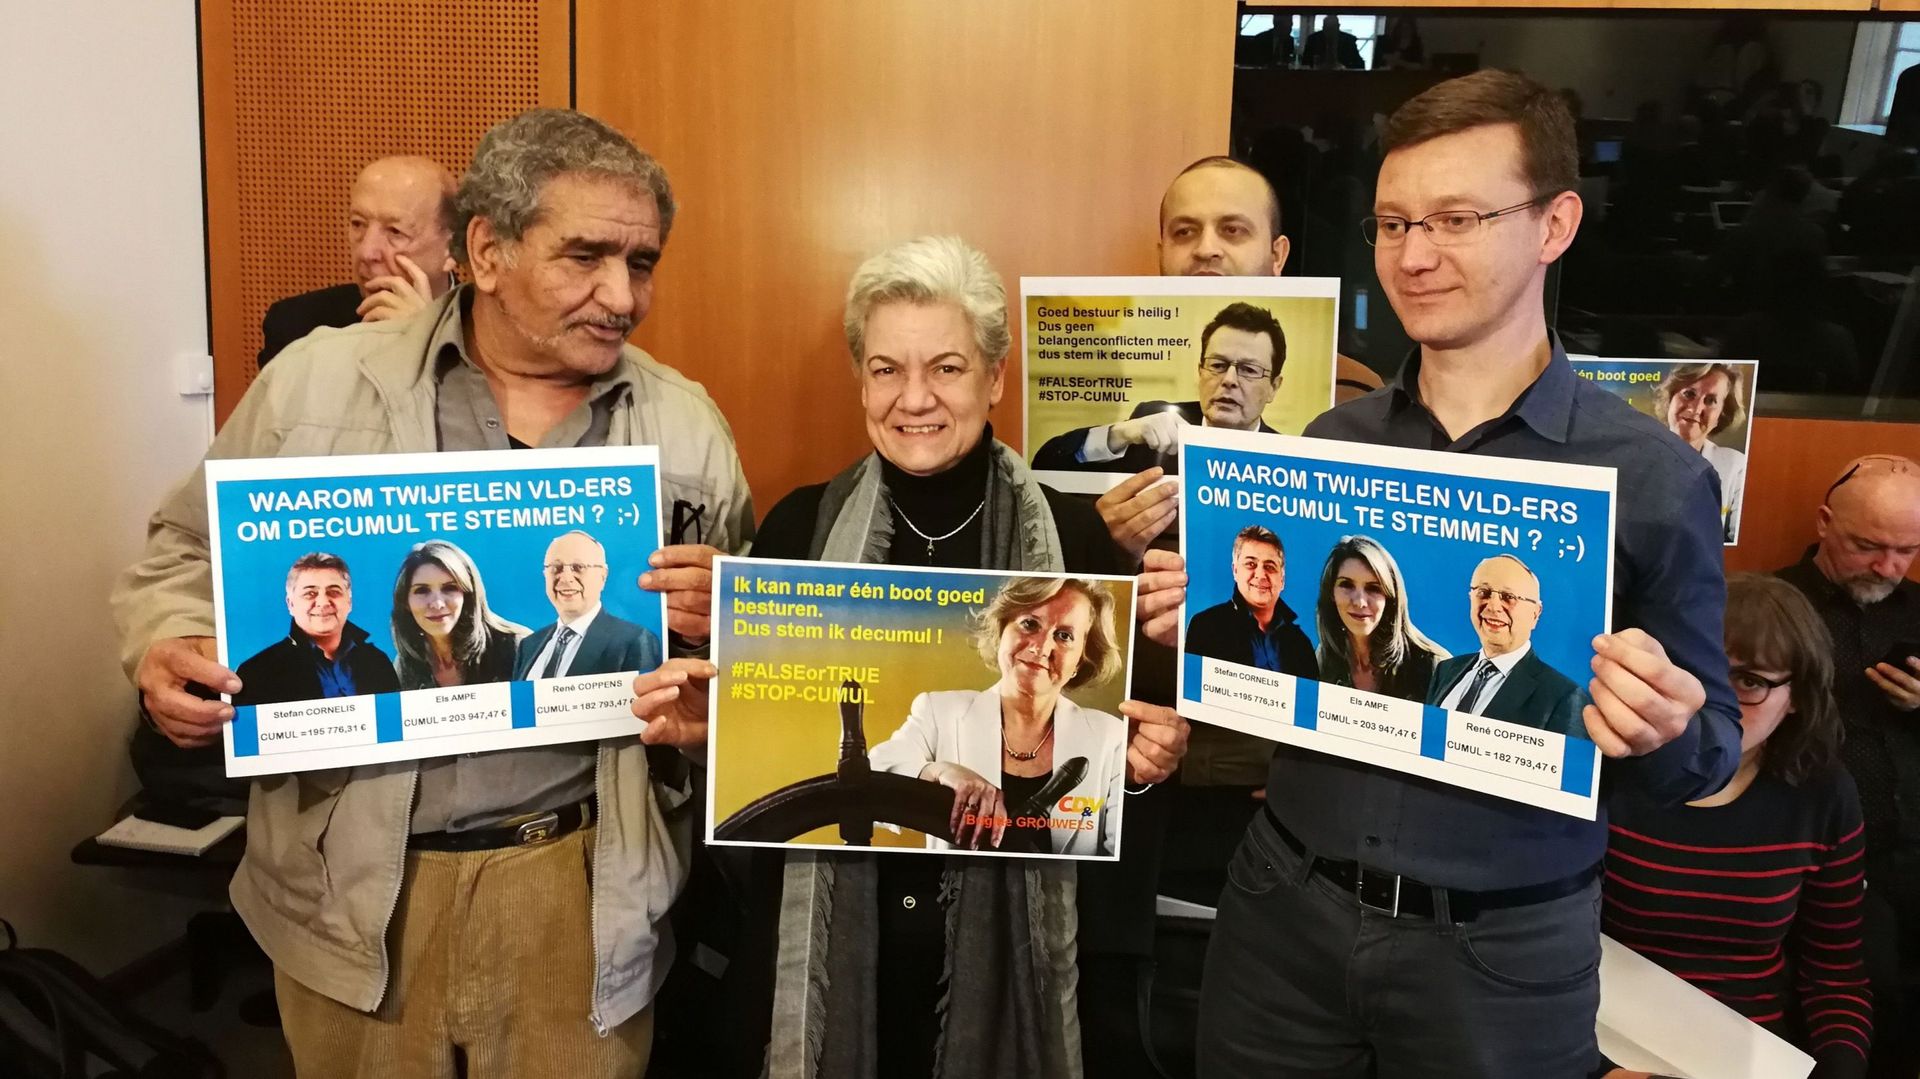 Les citoyens de Cumuleo et Transparancia sont également présents au parlement bruxellois pour soutenir le vote sur le décumul intégral à Bruxelles.